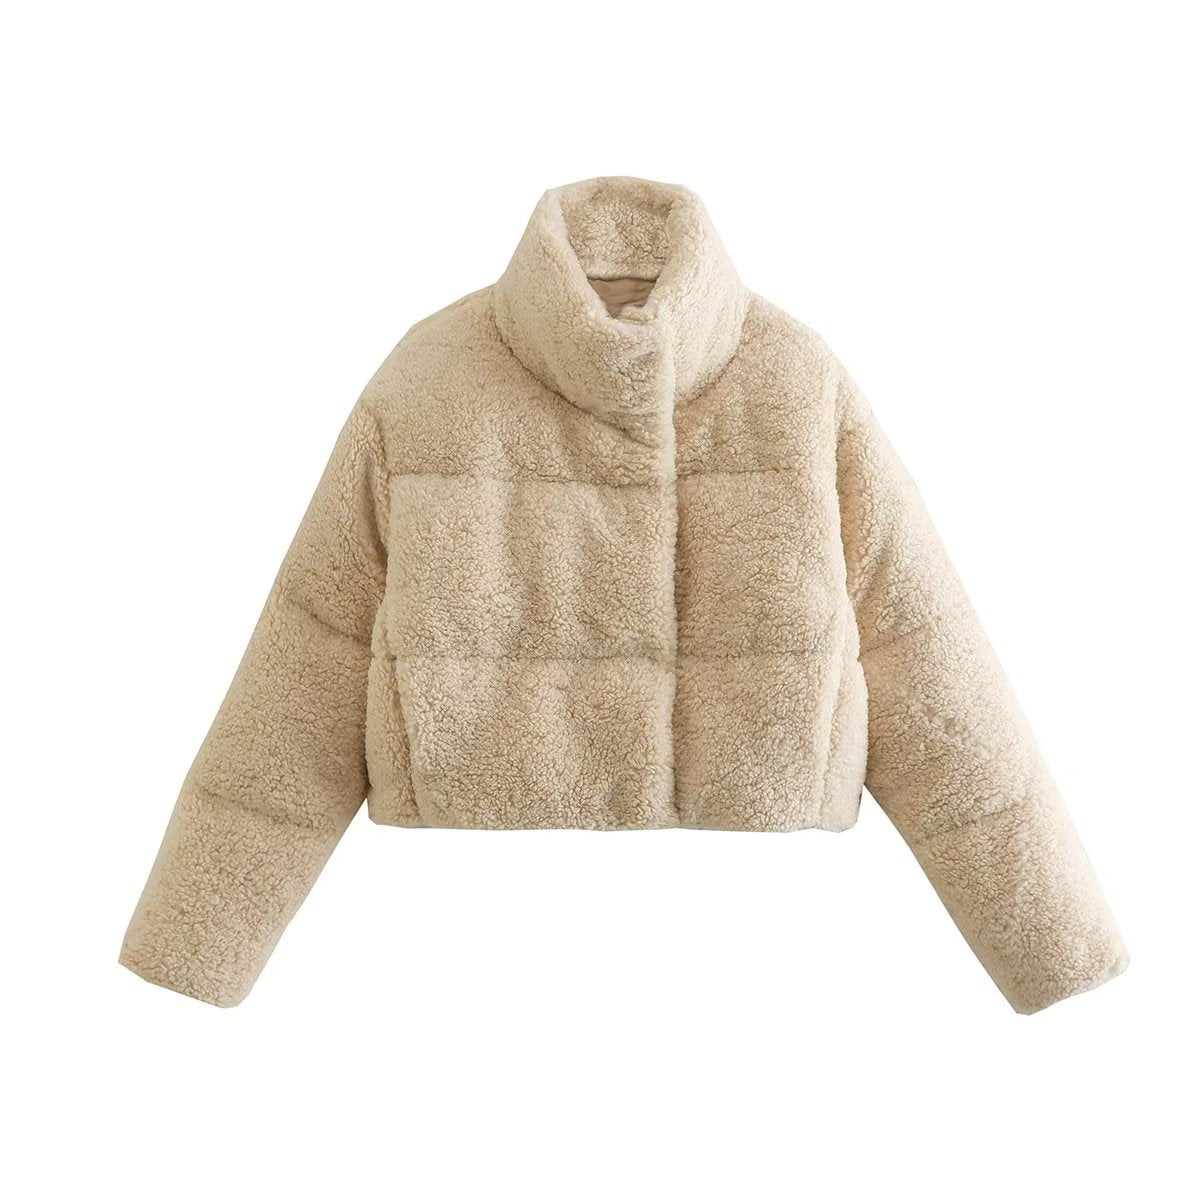 Women Casual Fleece Cotton Jacket Coat